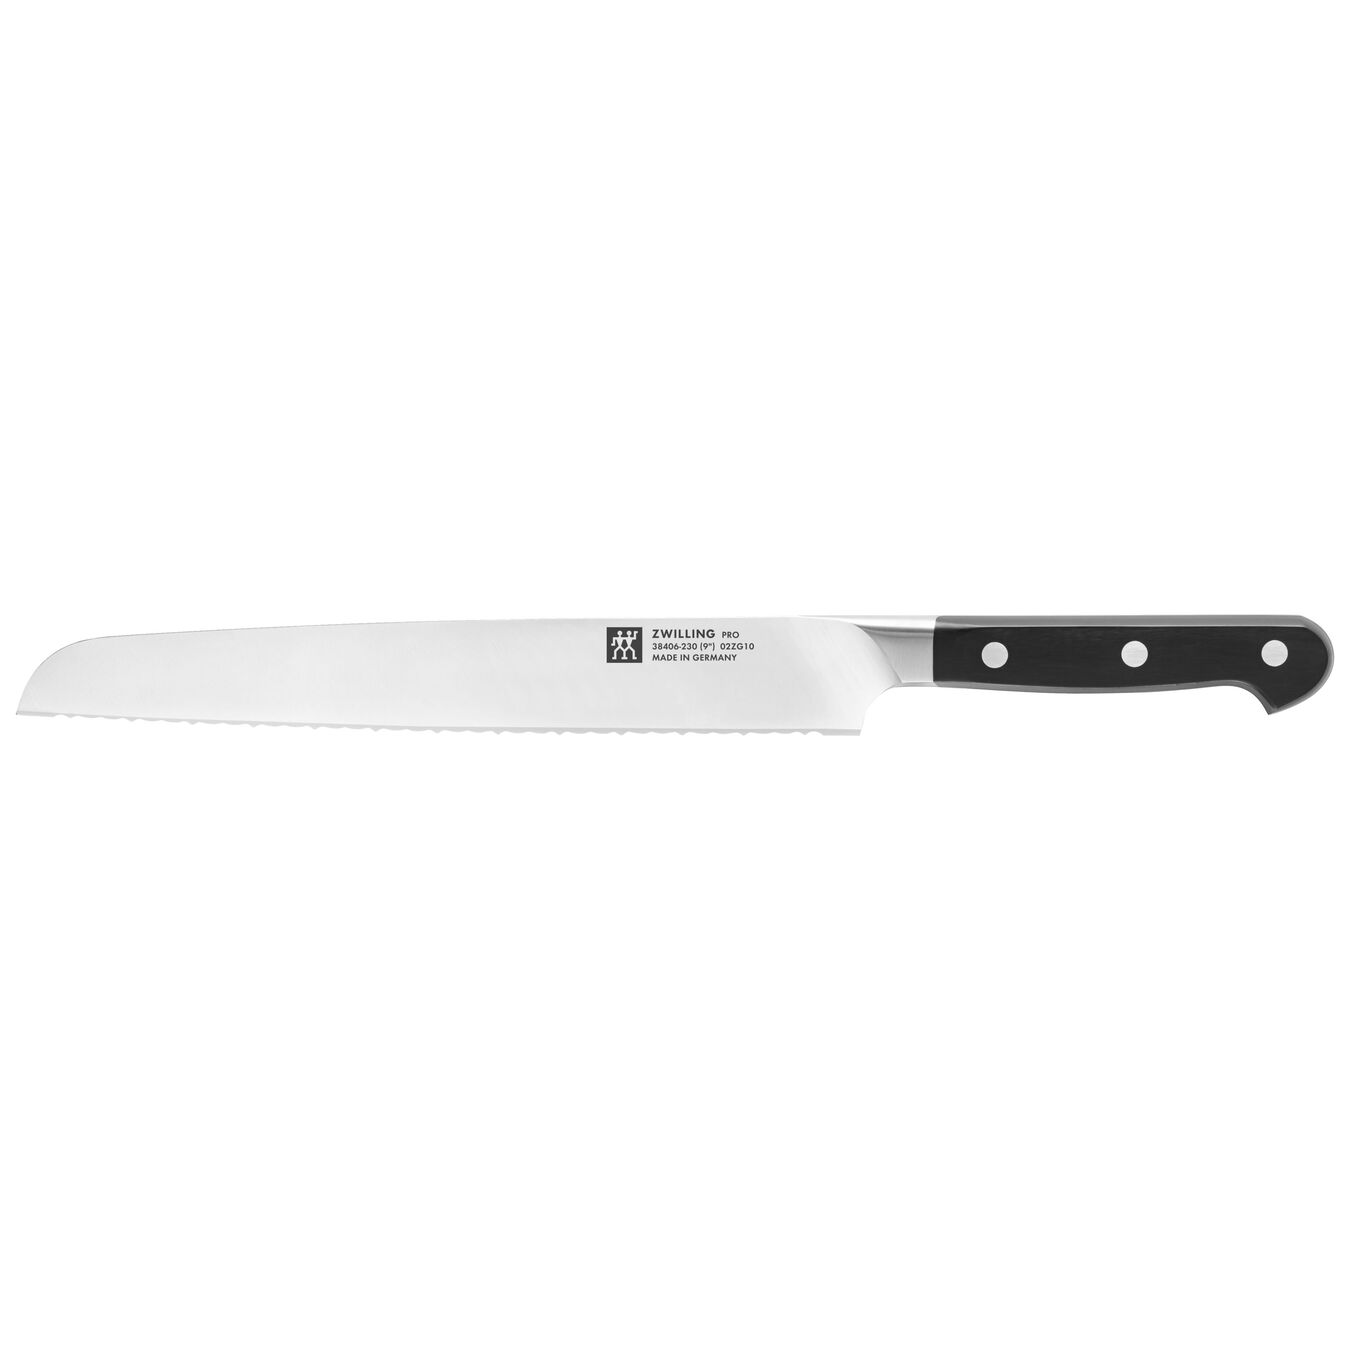 9-inch, Bread Knife Z15 Serration,,large 1